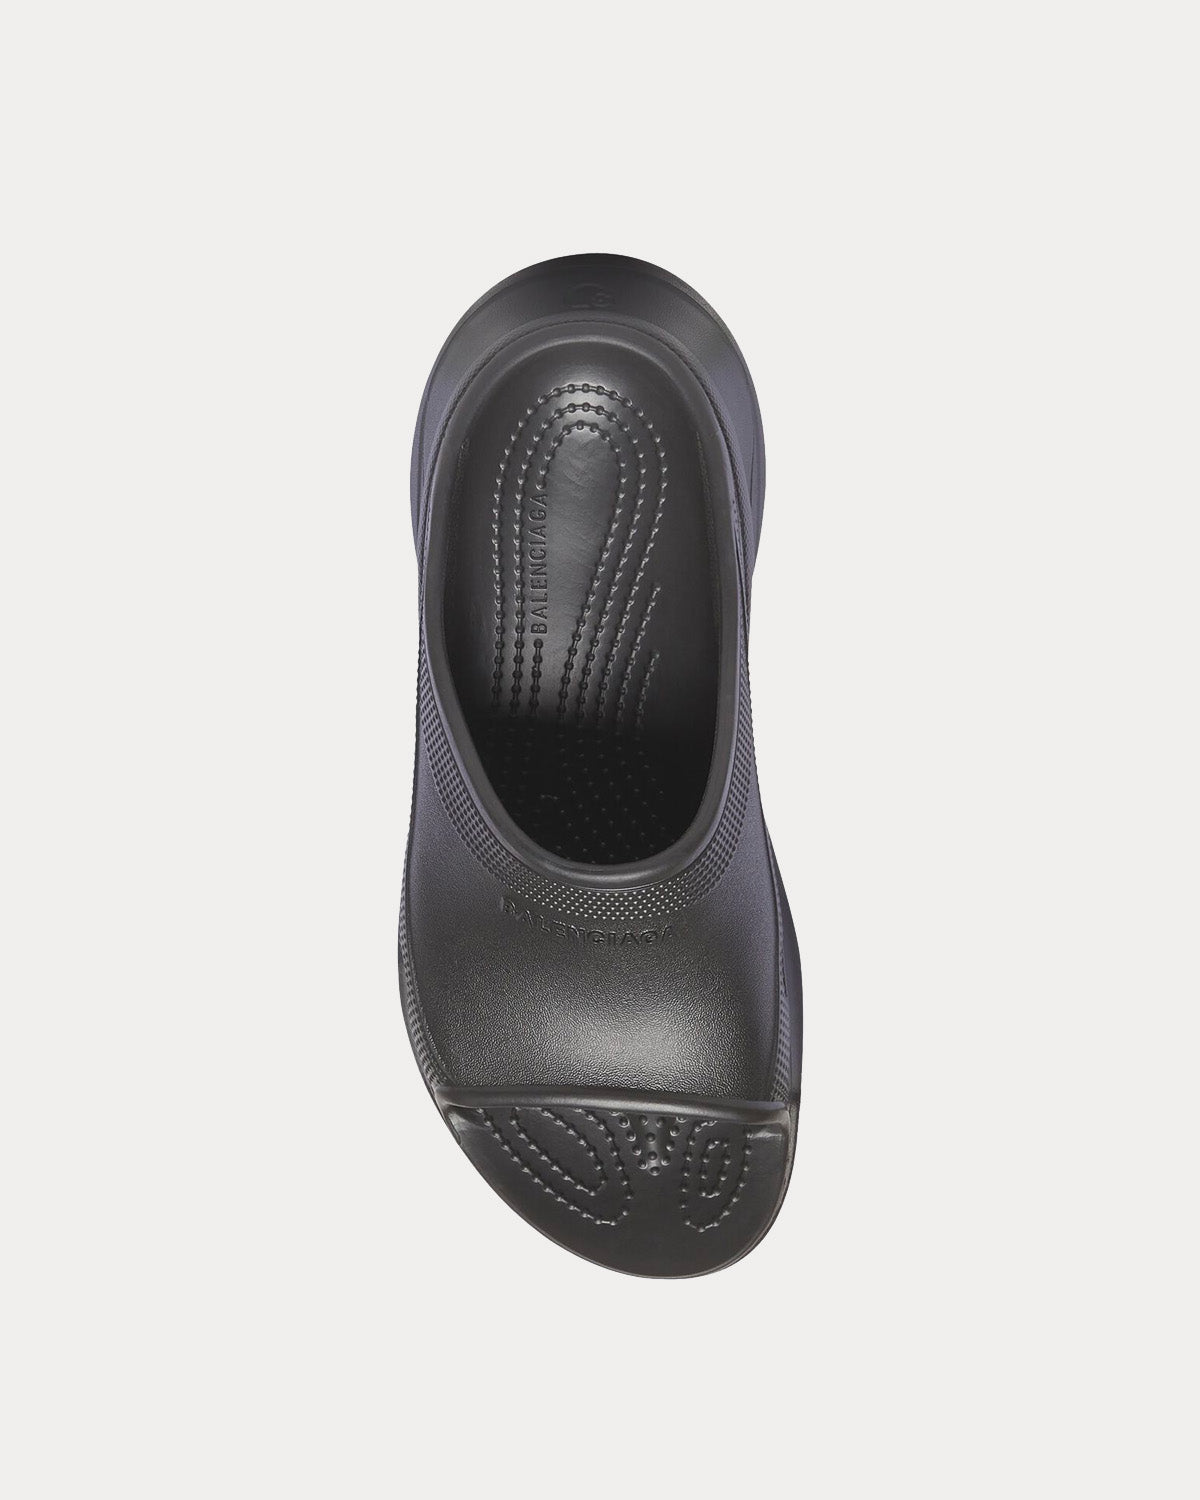 Balenciaga x Crocs - Pool Rubber Black Slide Sandals